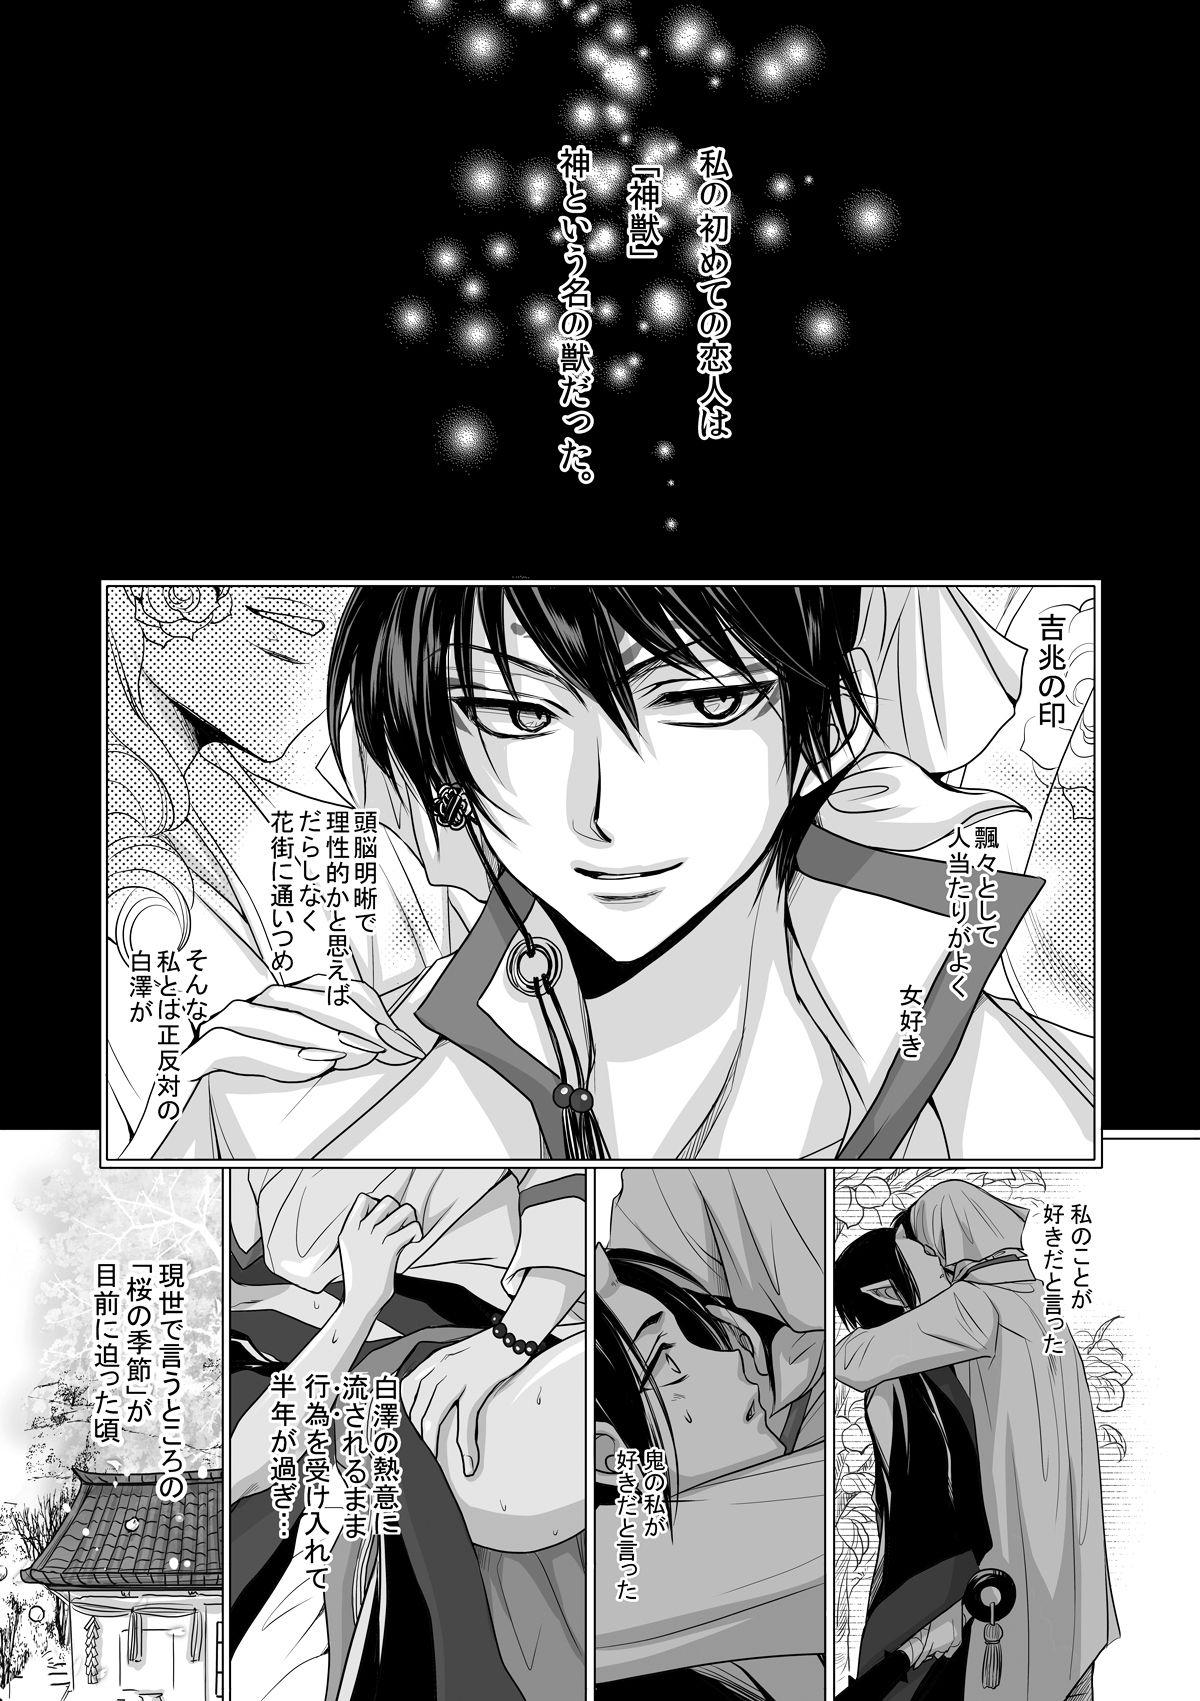 Exotic Devil Inside - Hoozuki no reitetsu Gay Cut - Page 6